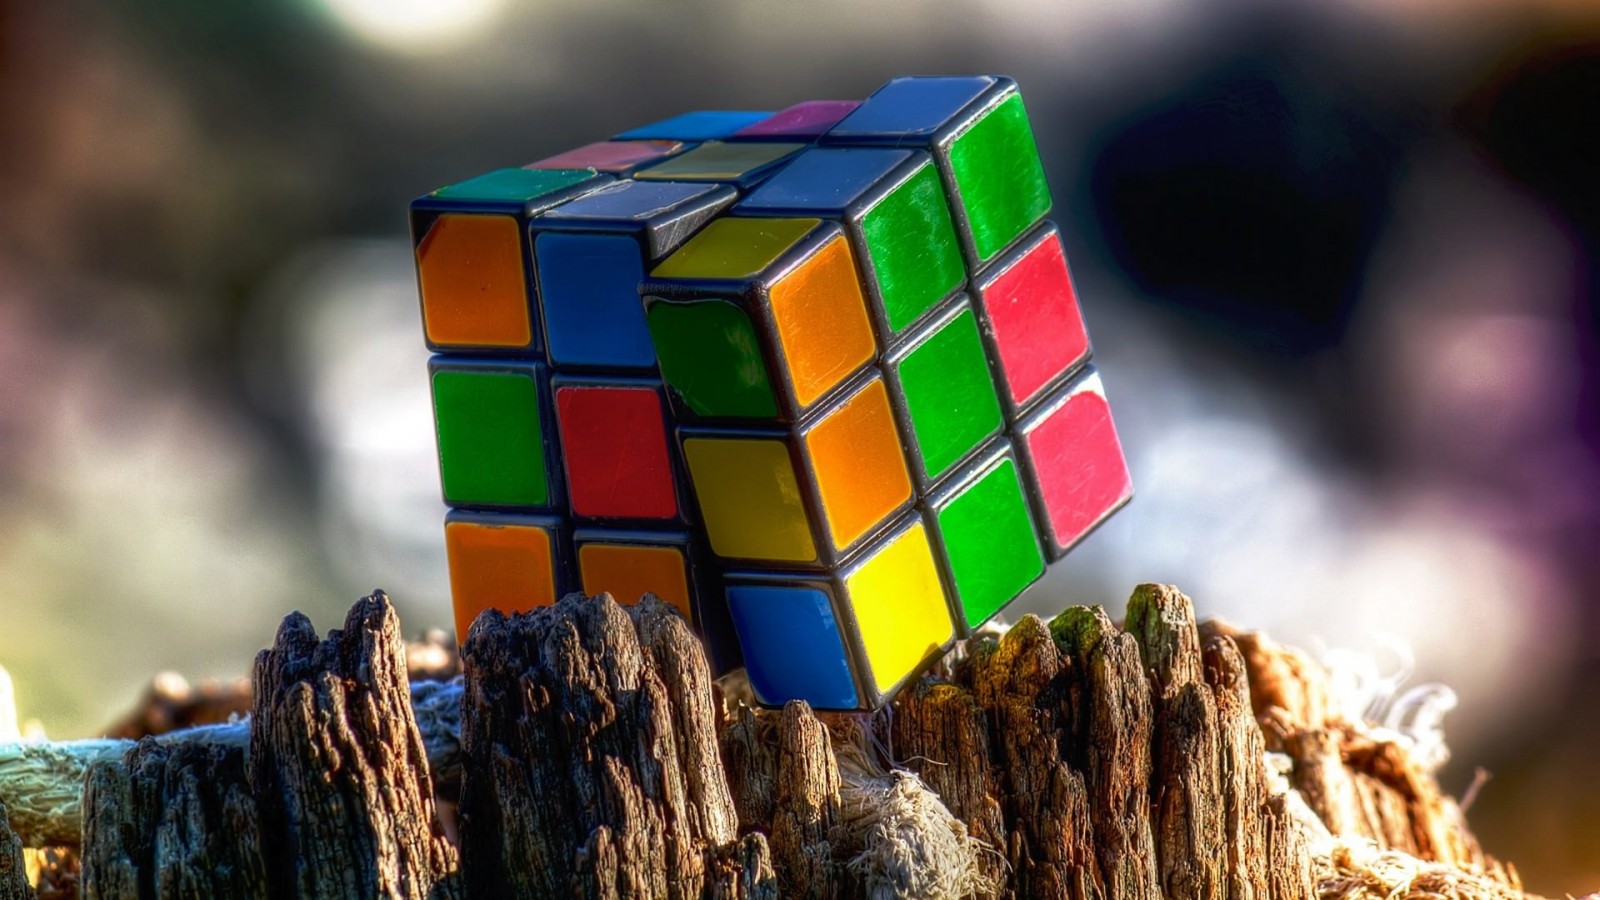 Rubik's Cube Wallpaper for Desktop 1600x900